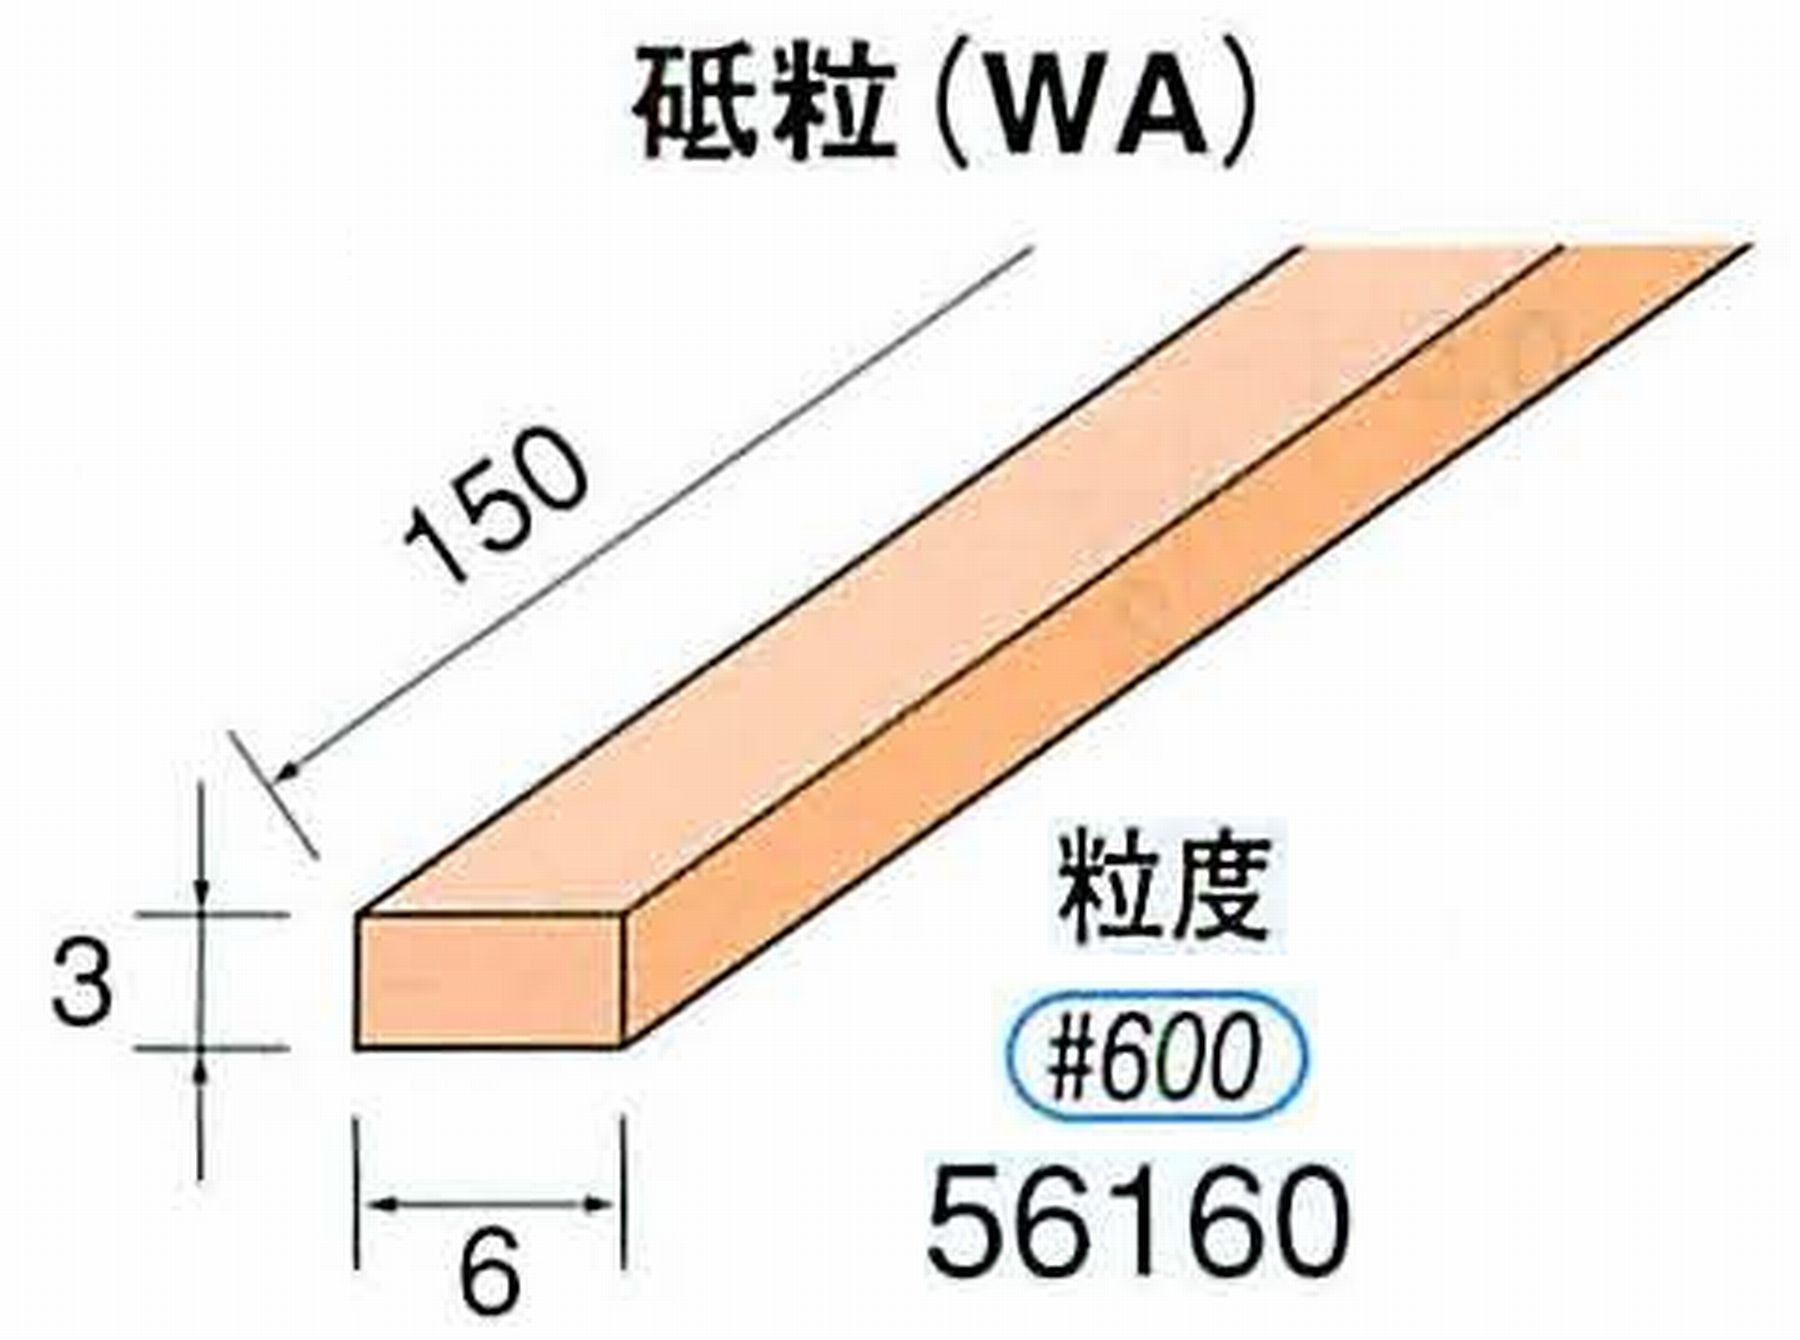 ナカニシ/NAKANISHI スティック砥石 スタンダードシリーズ 砥粒(WA) 56160